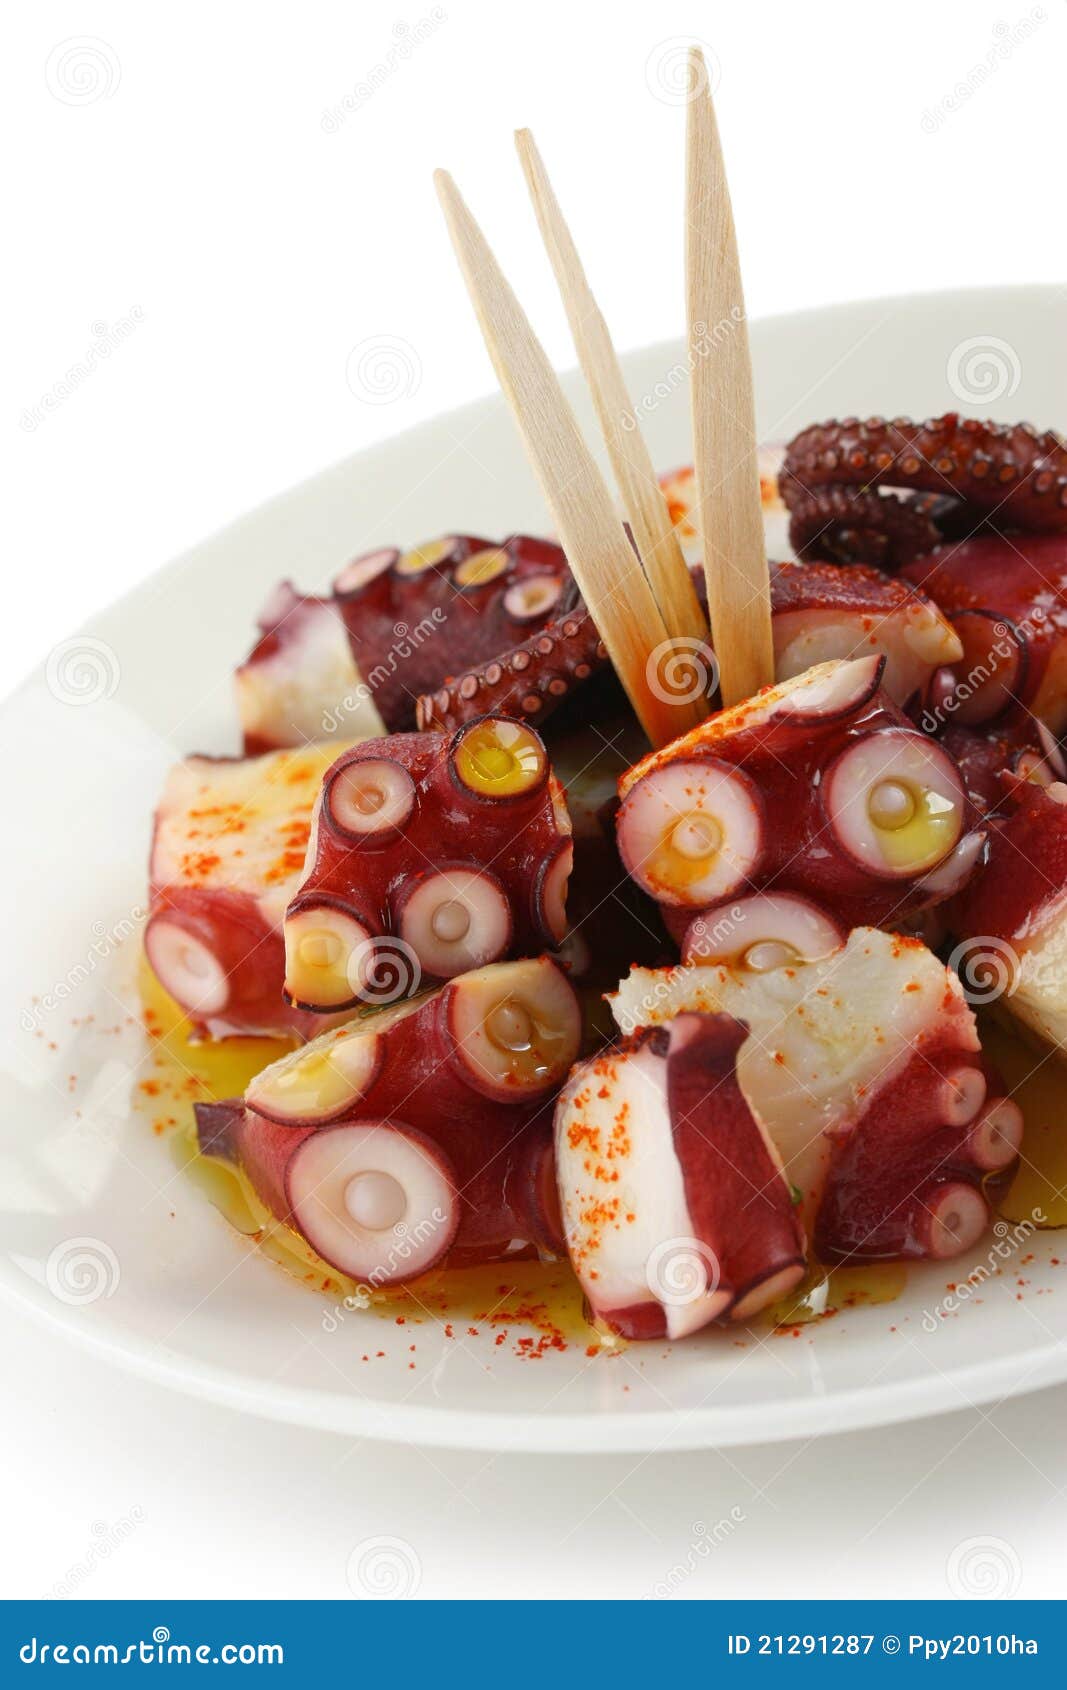 octopus galician style (pulpo a la gallega) , span